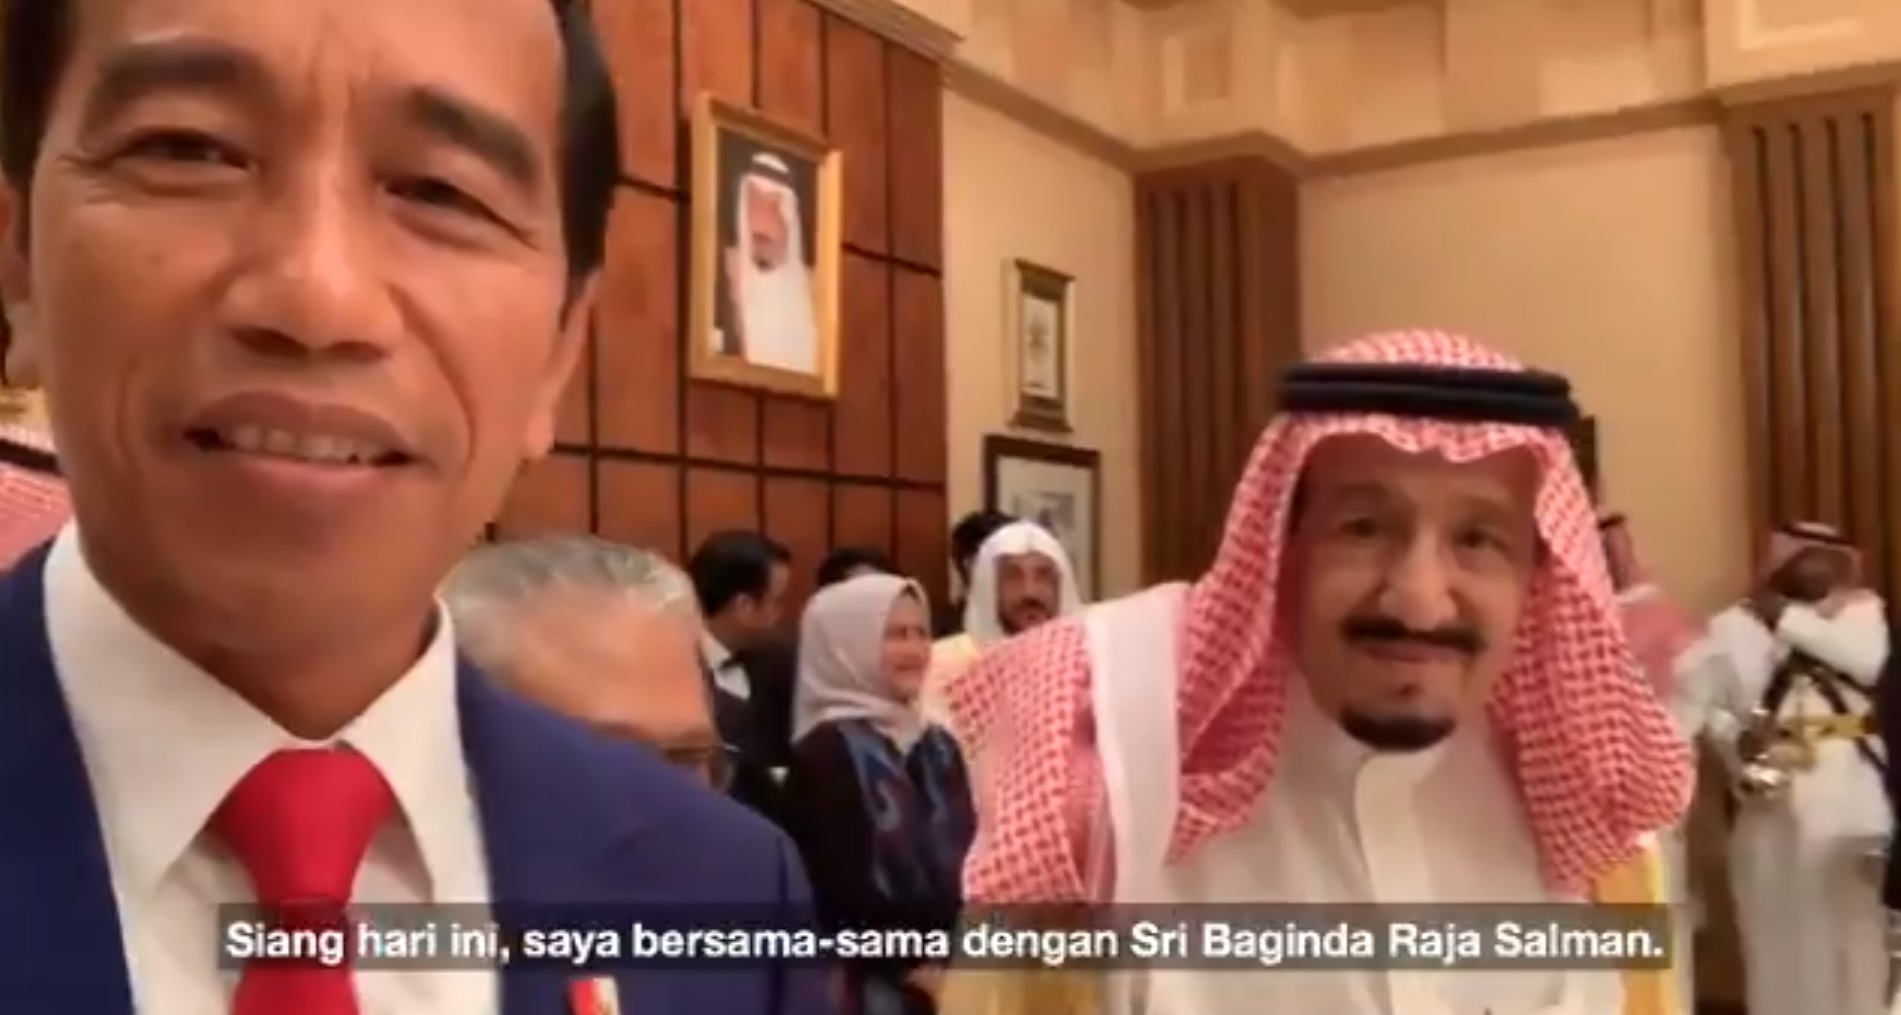 الملك سلمان في سيلفي مع الرئيس الإندونيسي : مكة والمدينة بلد كل المسلمين